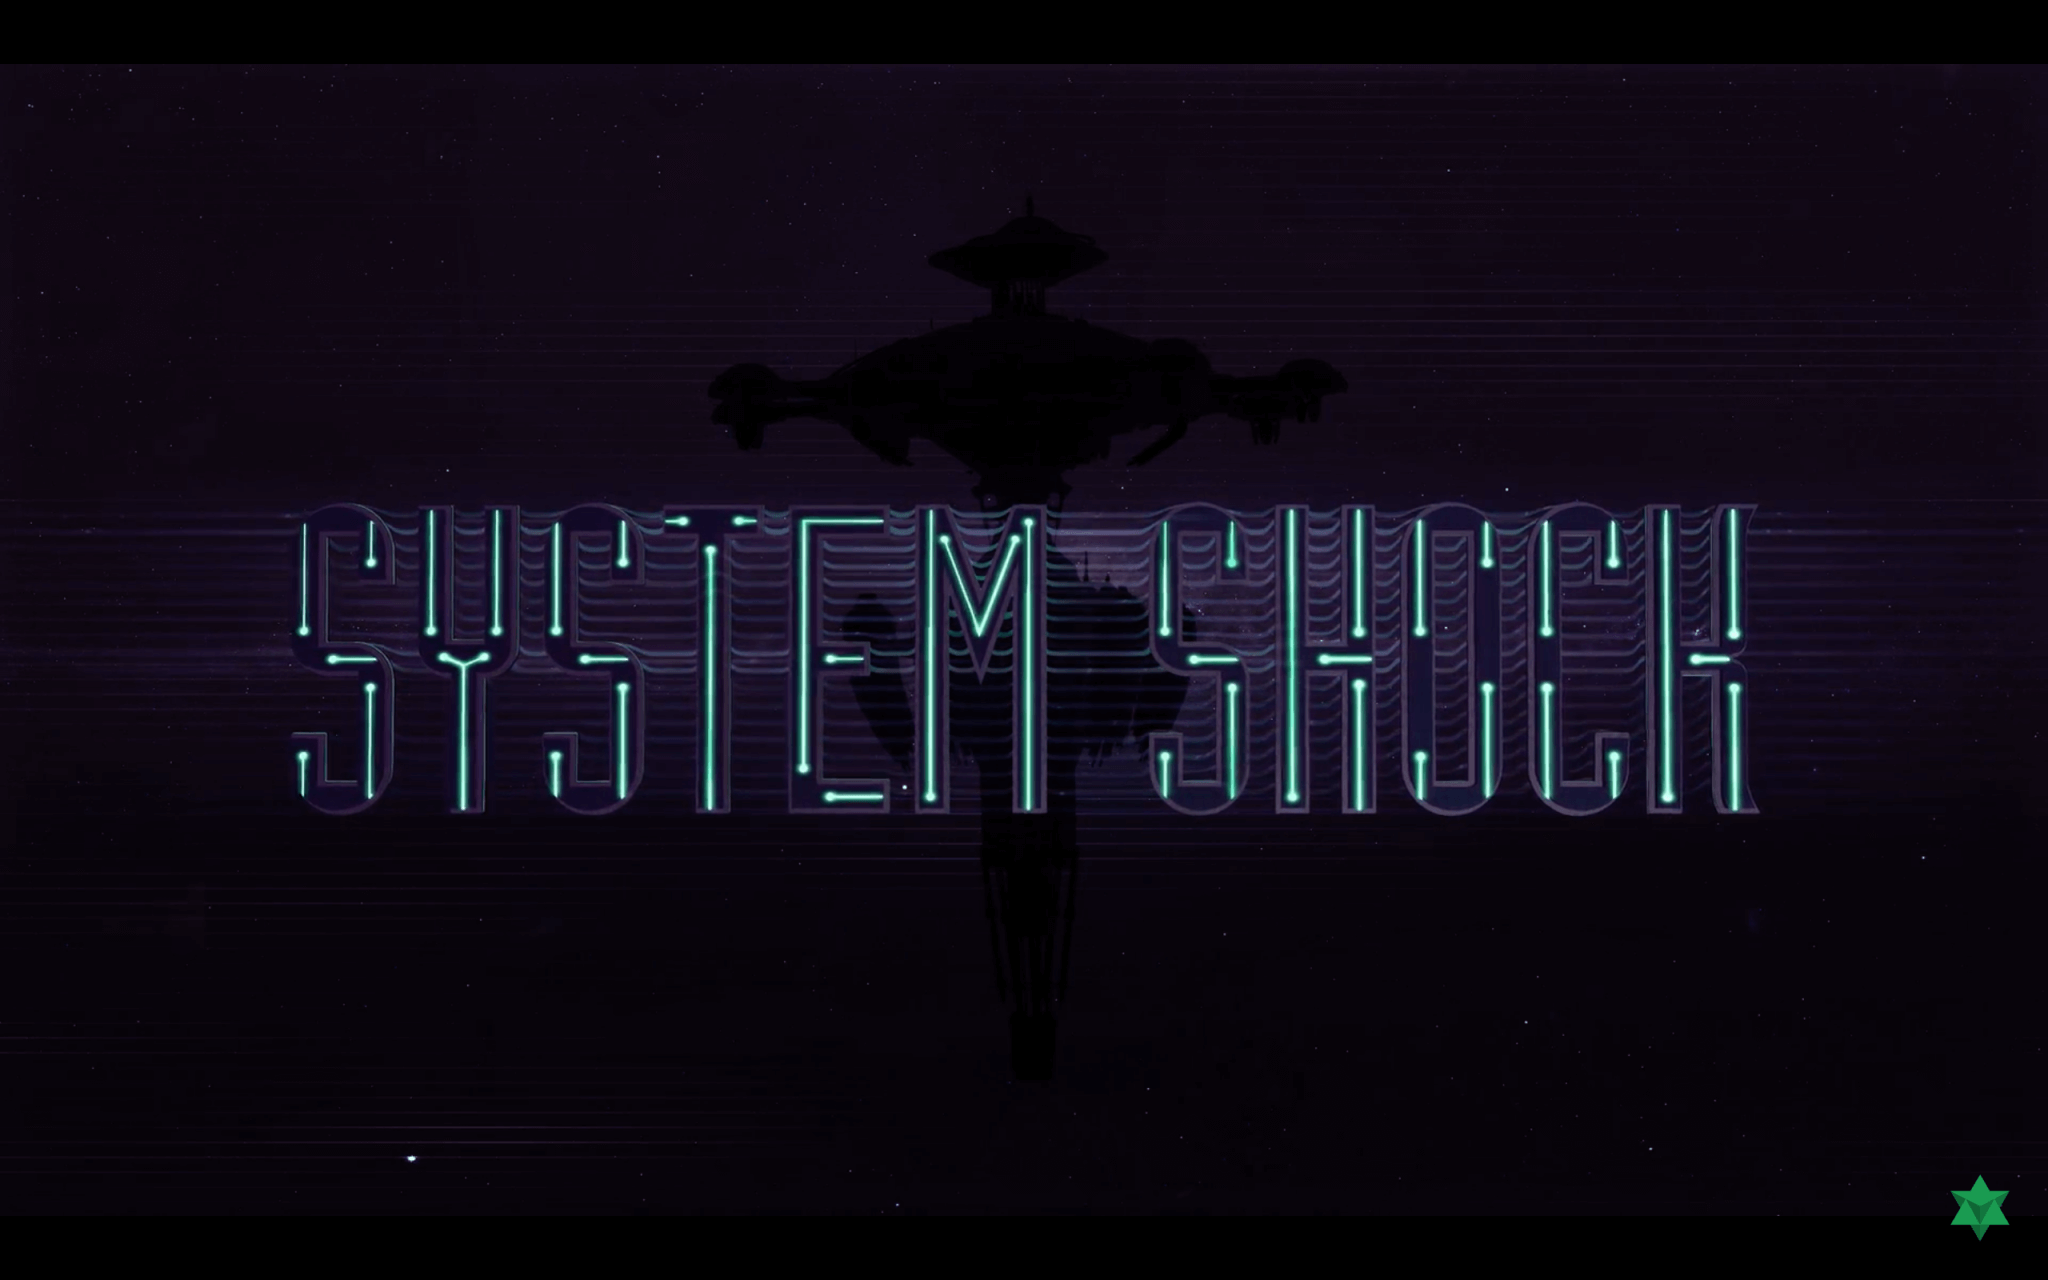 System Shock Remake (Screenshot aus Trailer; Bildrechte: Nightdive Studios)